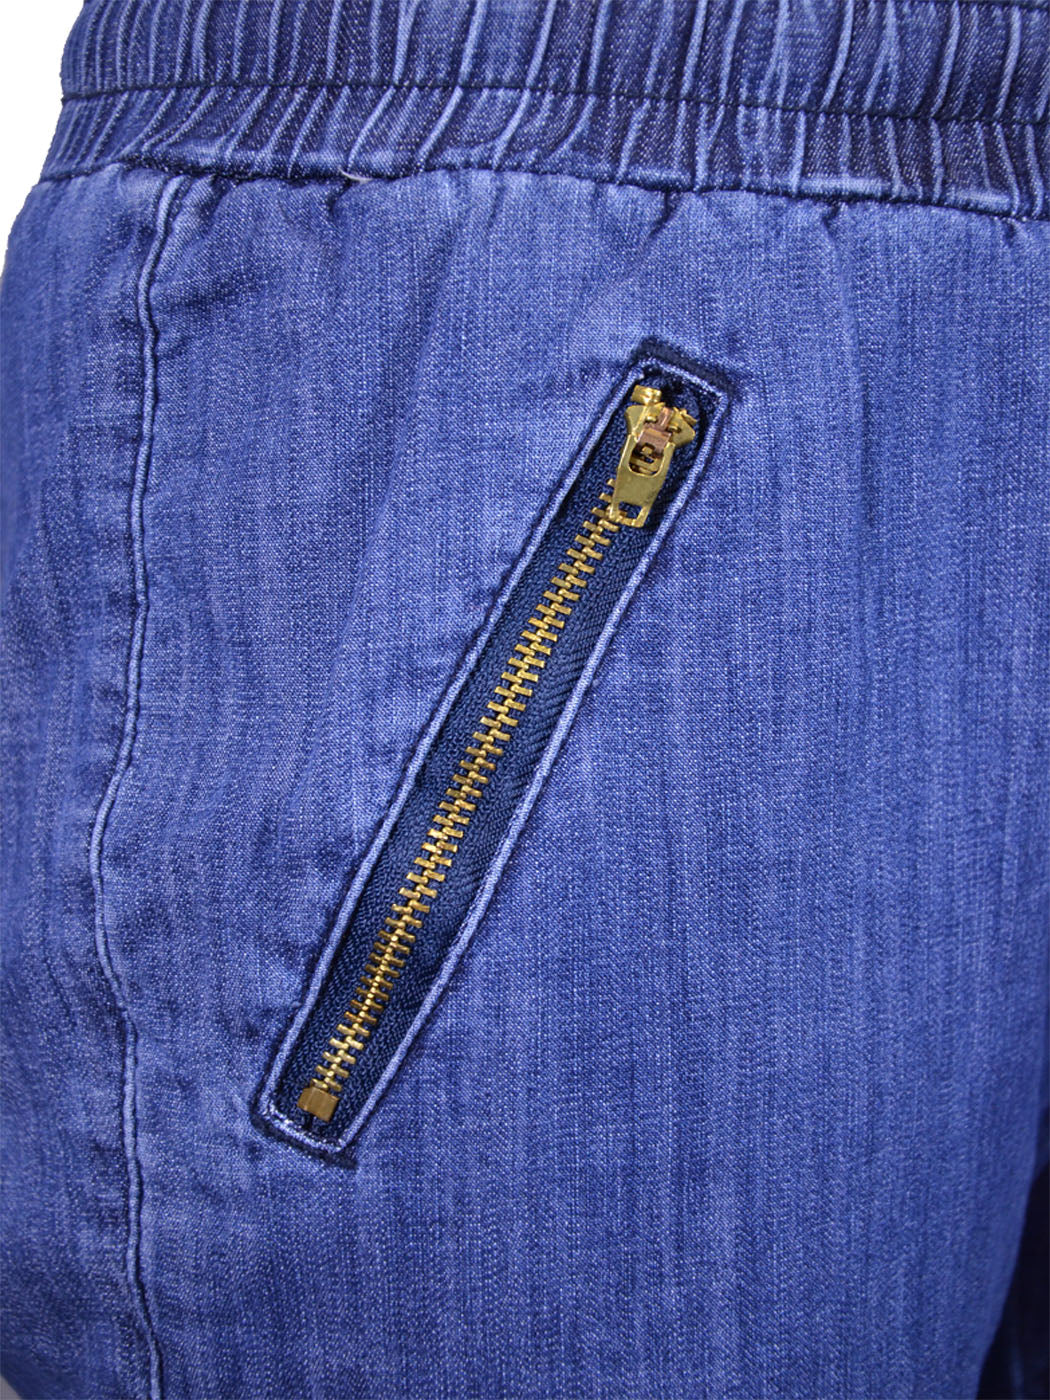 Uniq Upbeat Urban Chic Zipper Pockets Elastic Waist Comfy Jogger Denim Pants